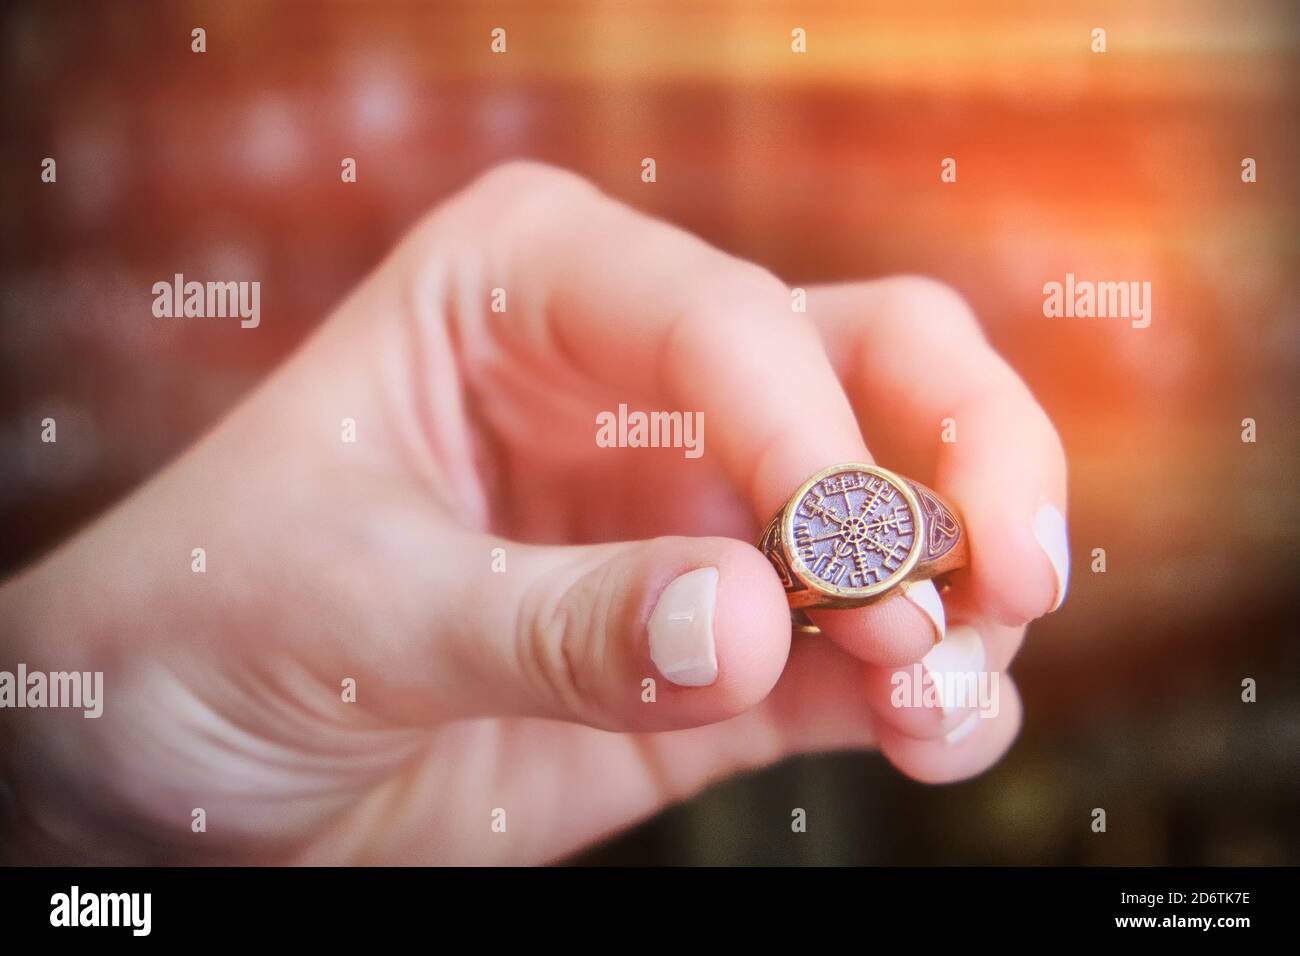 Ring mit alten skandinavischen Runen - agishyalm. Schamrock Amulett. Ring 'Helm des Terrors' bestehend aus vier Runen Algiz. Stockfoto